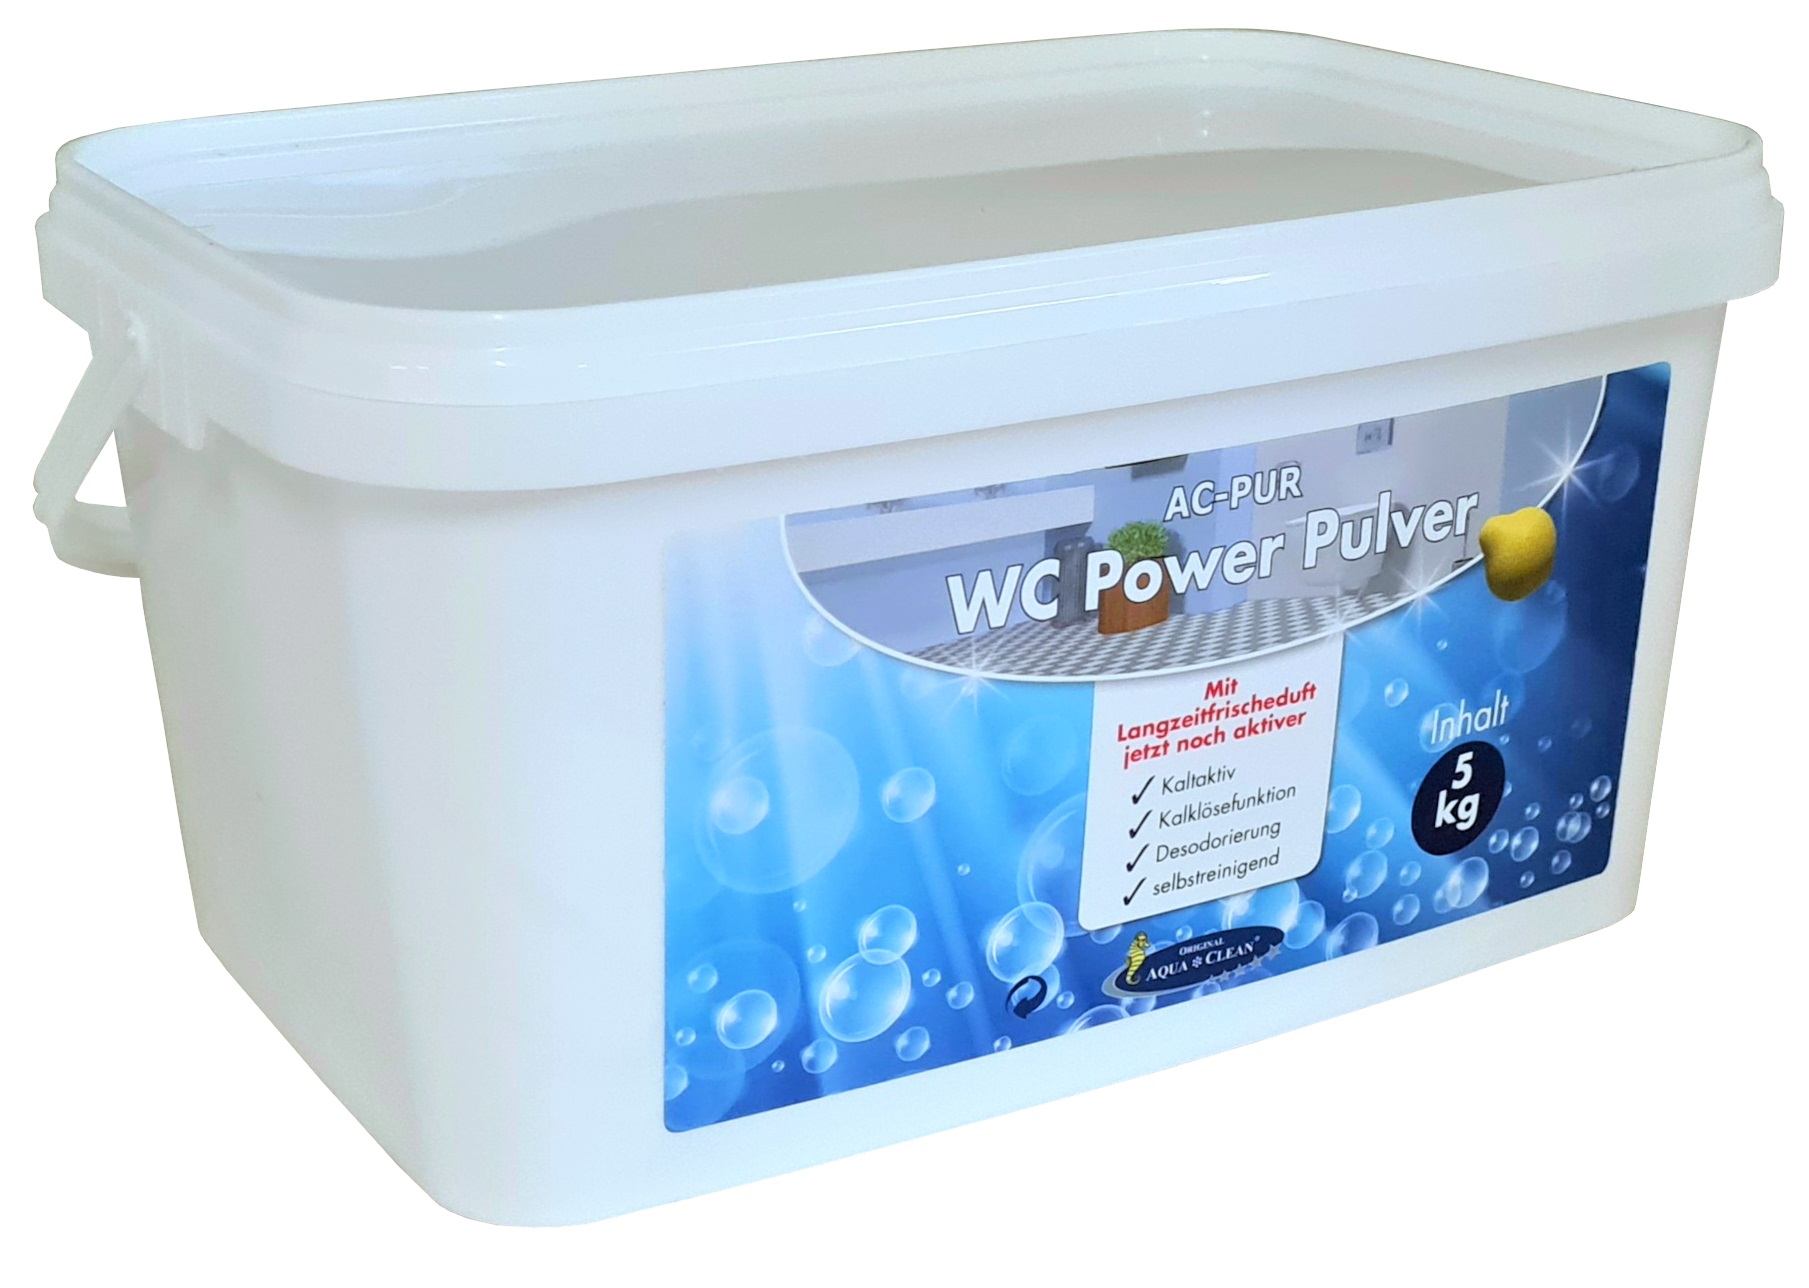 AQUA CLEAN WC Power Pulver 5 kg Neu mit Langzeitfrischeduft